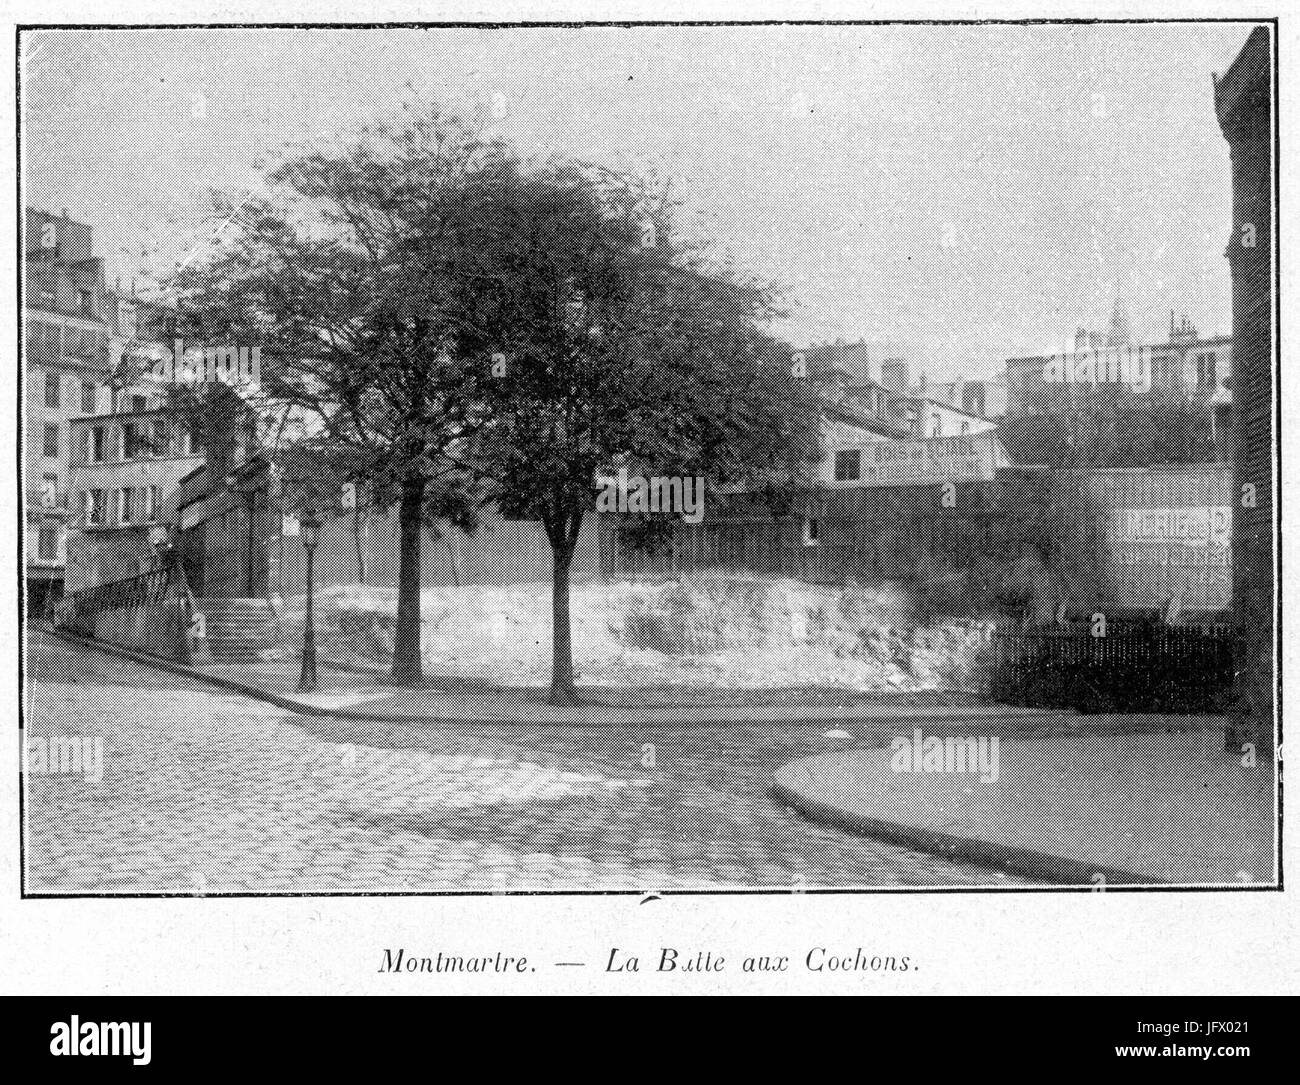 Clément Maurice Paris en plein air, BUC, 1897,160 Montmartre, la Butte-aux-Cochons Banque D'Images